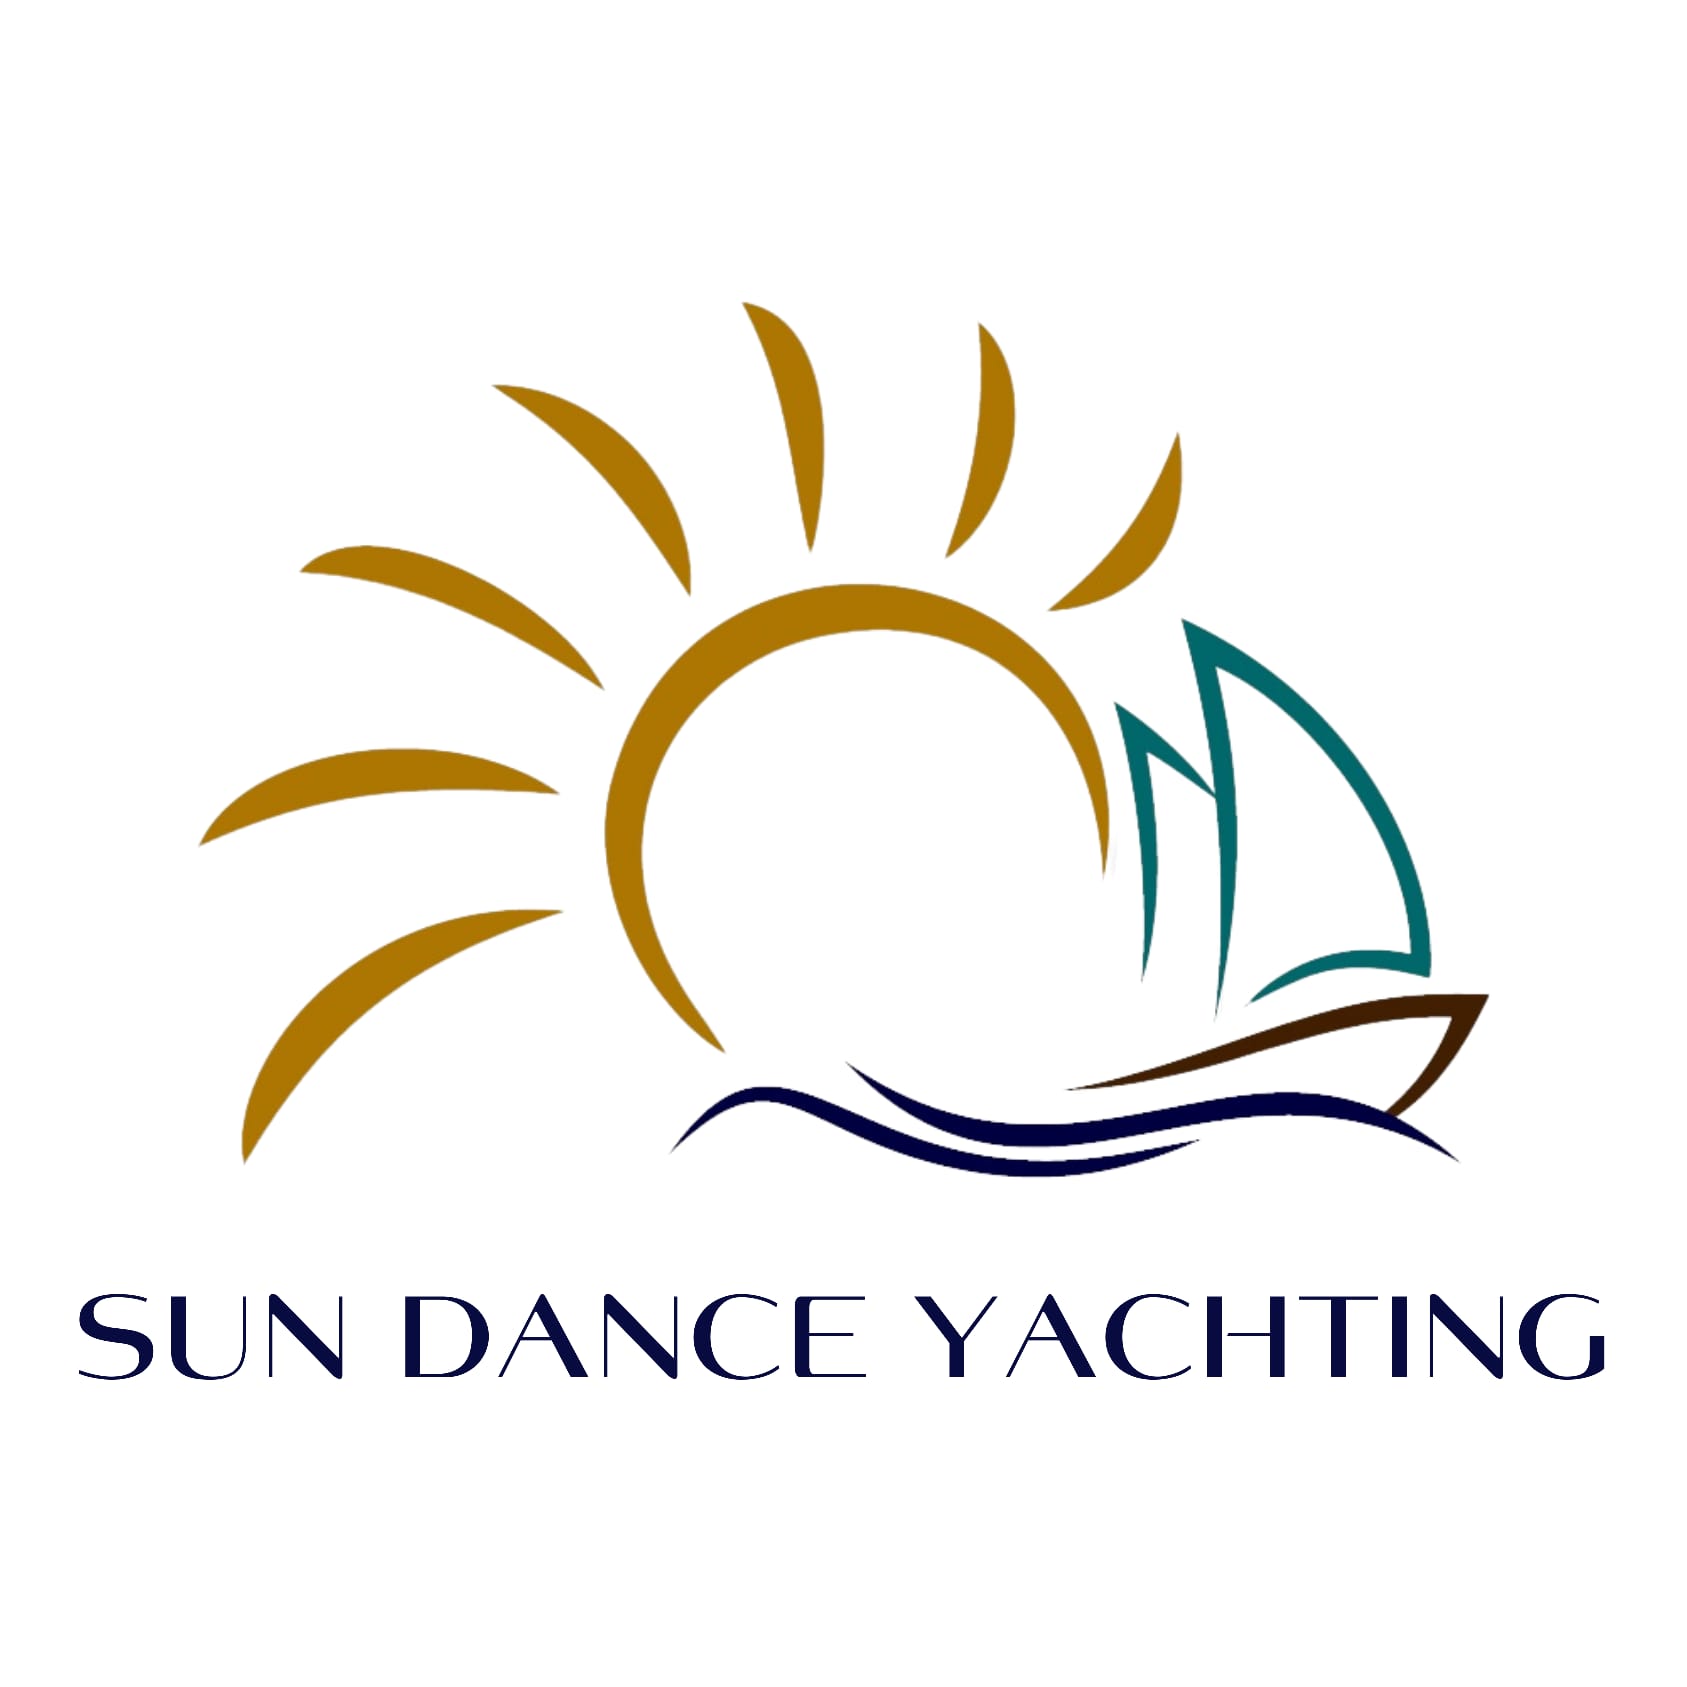 GENTA SHIPPING (SUN DANCE YACHTING)